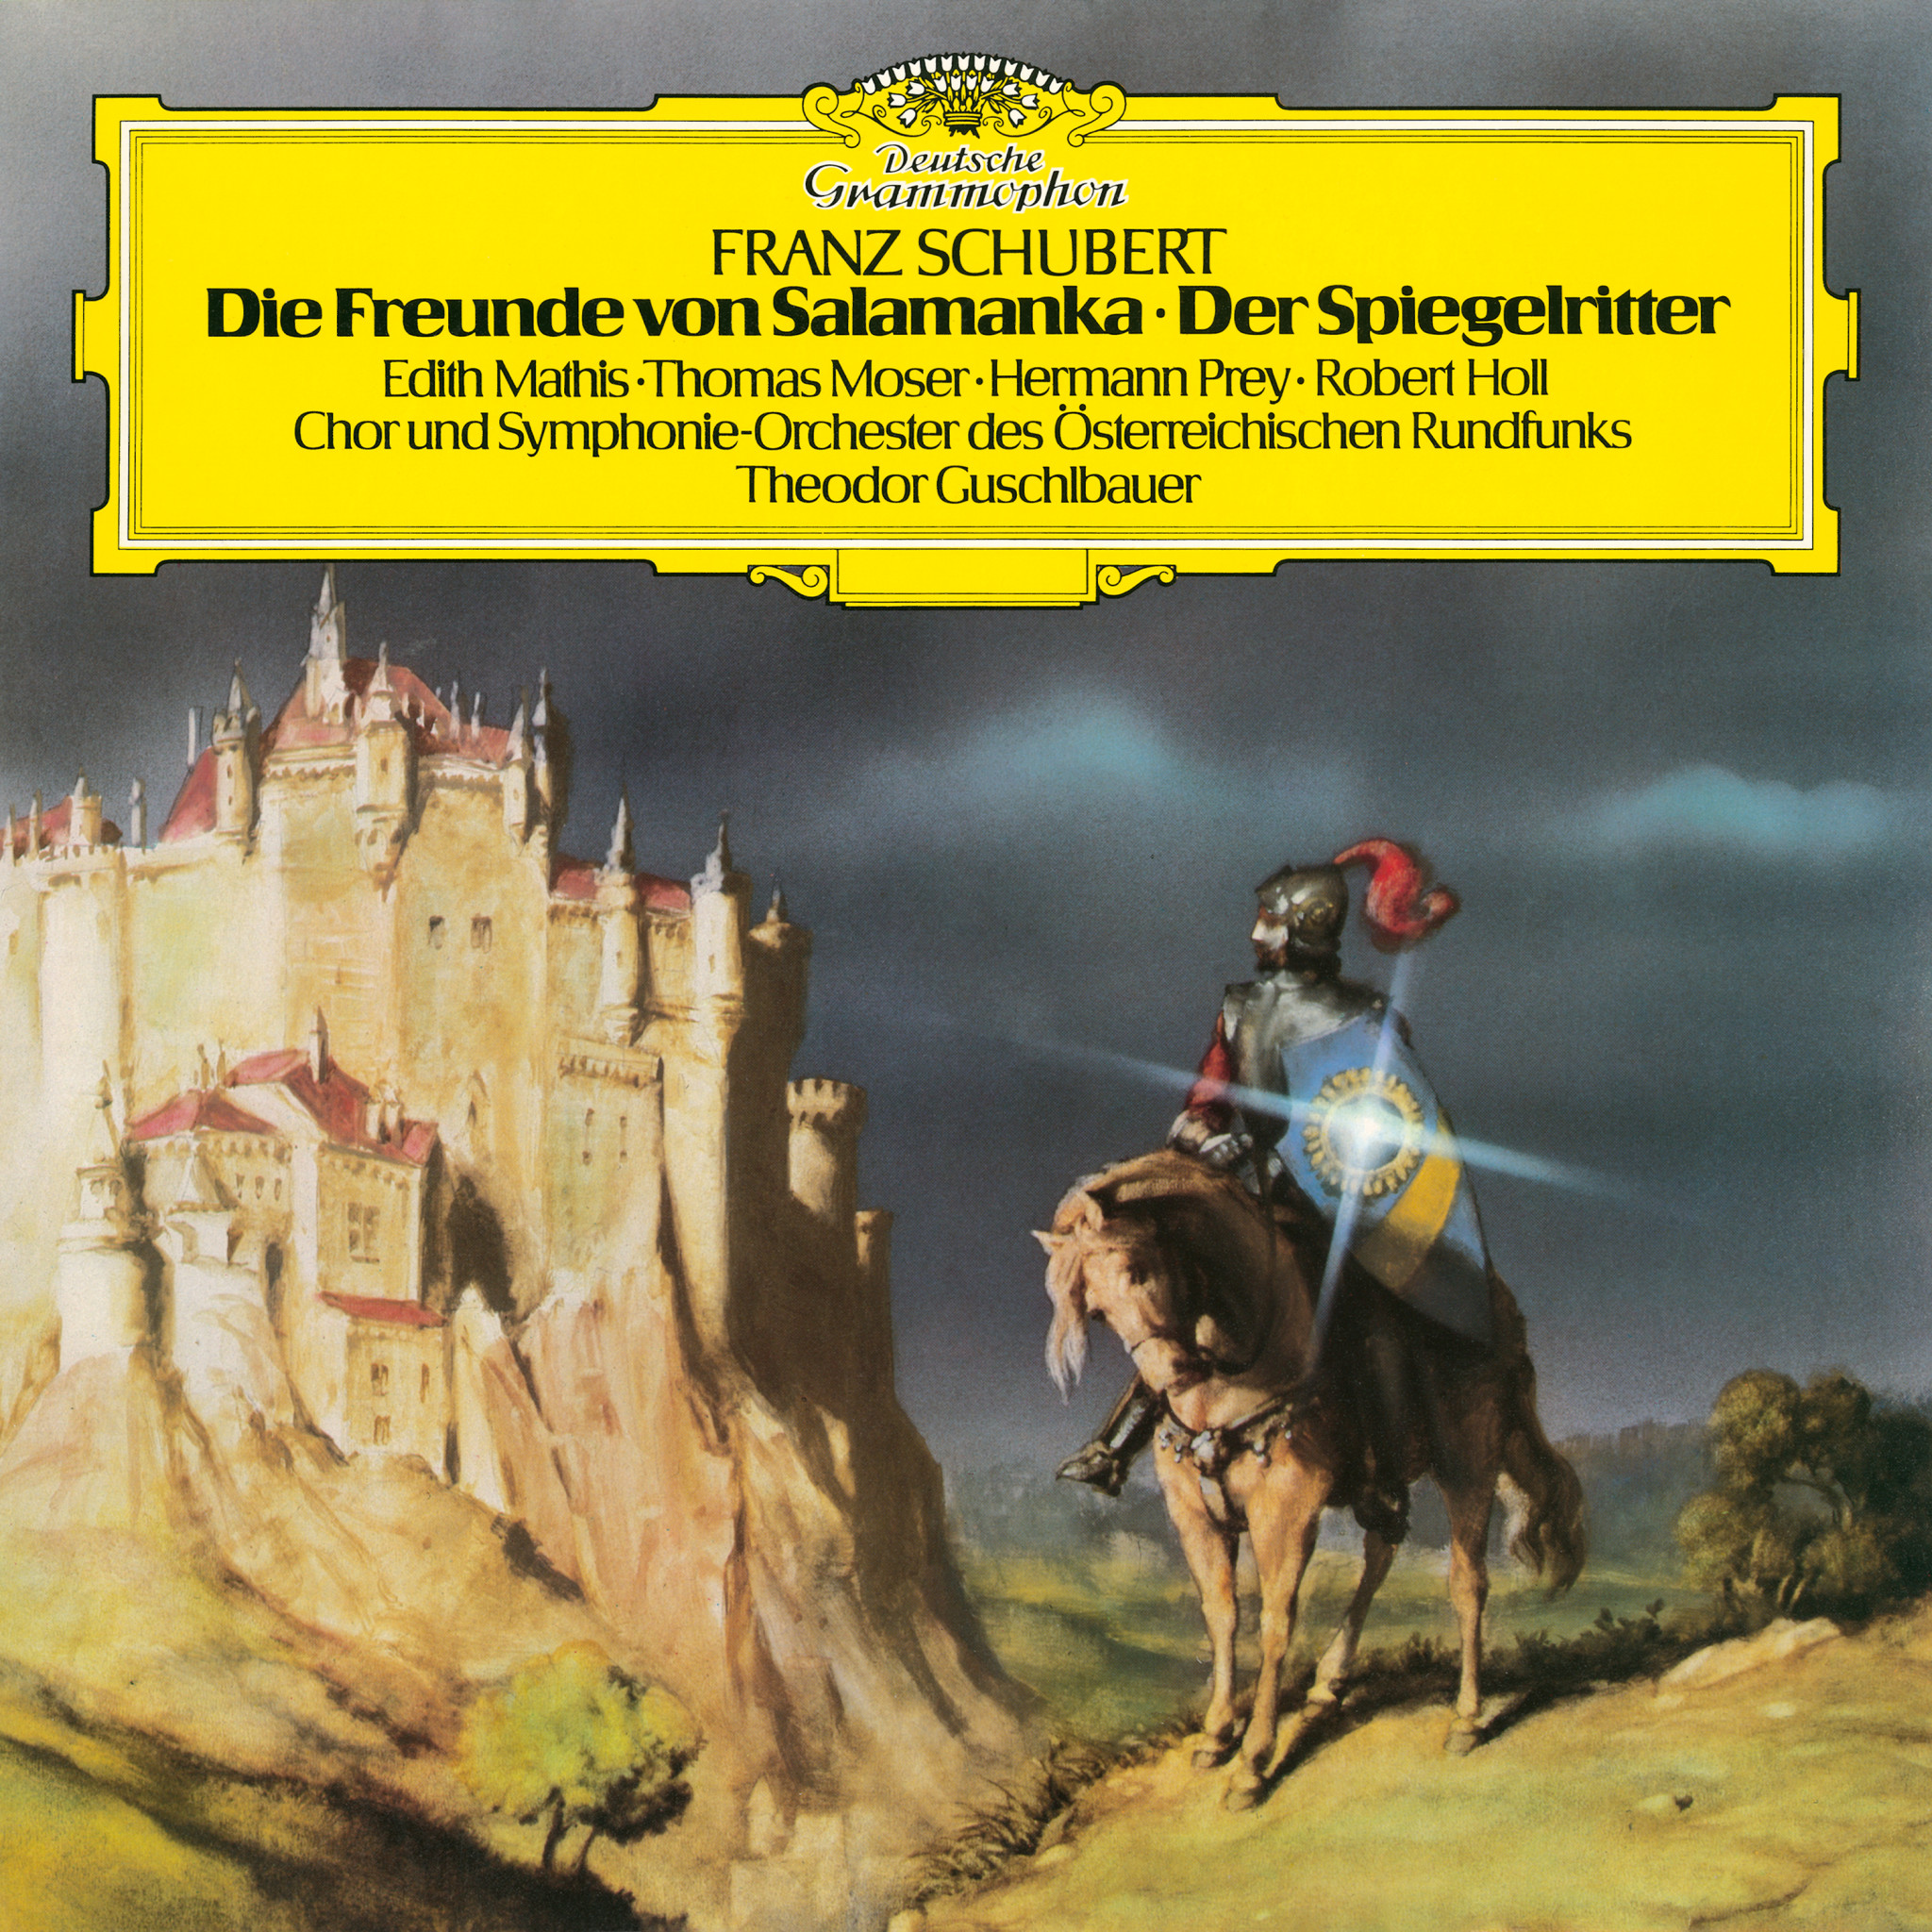 Franz Schubert: Die Freunde von Salamanka | Der Spiegelritter